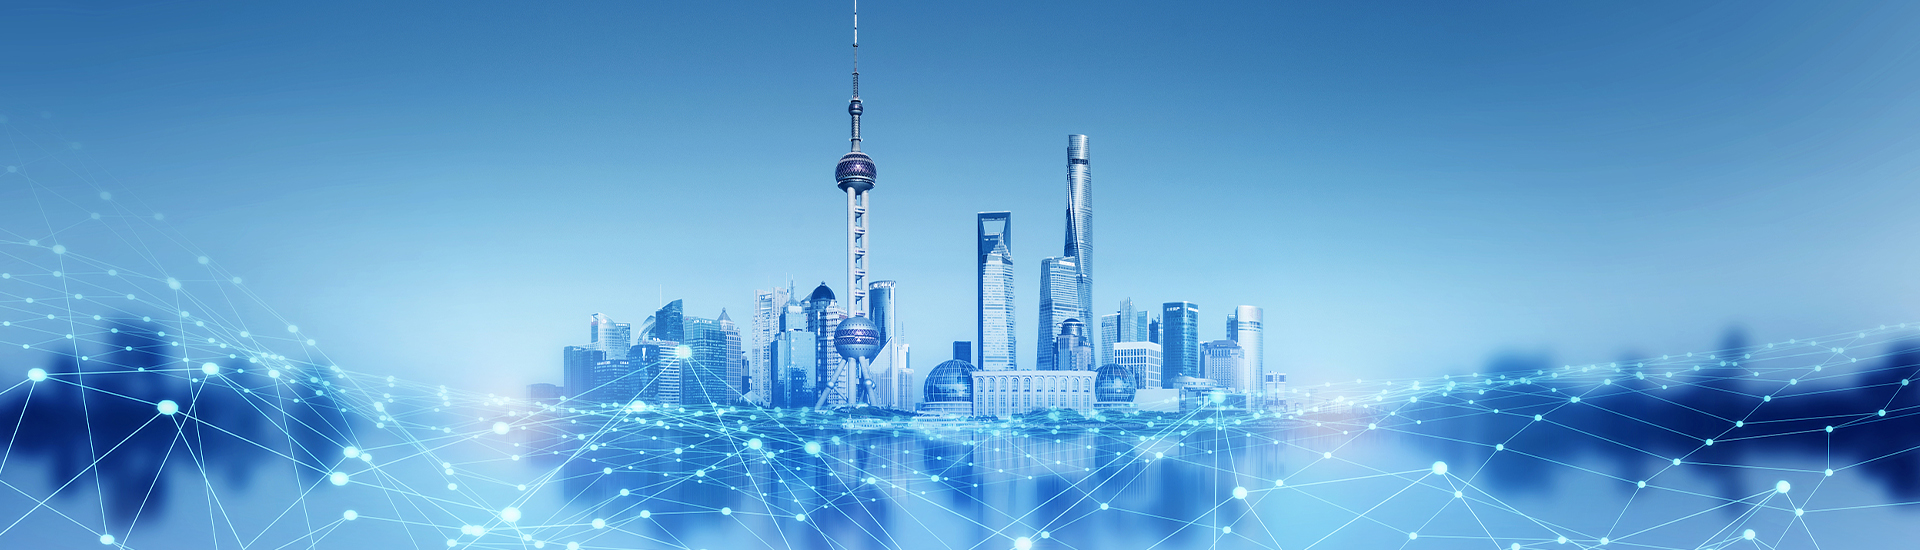 Основные положения политики по привлечению иностранных инвестиций в Шанхае